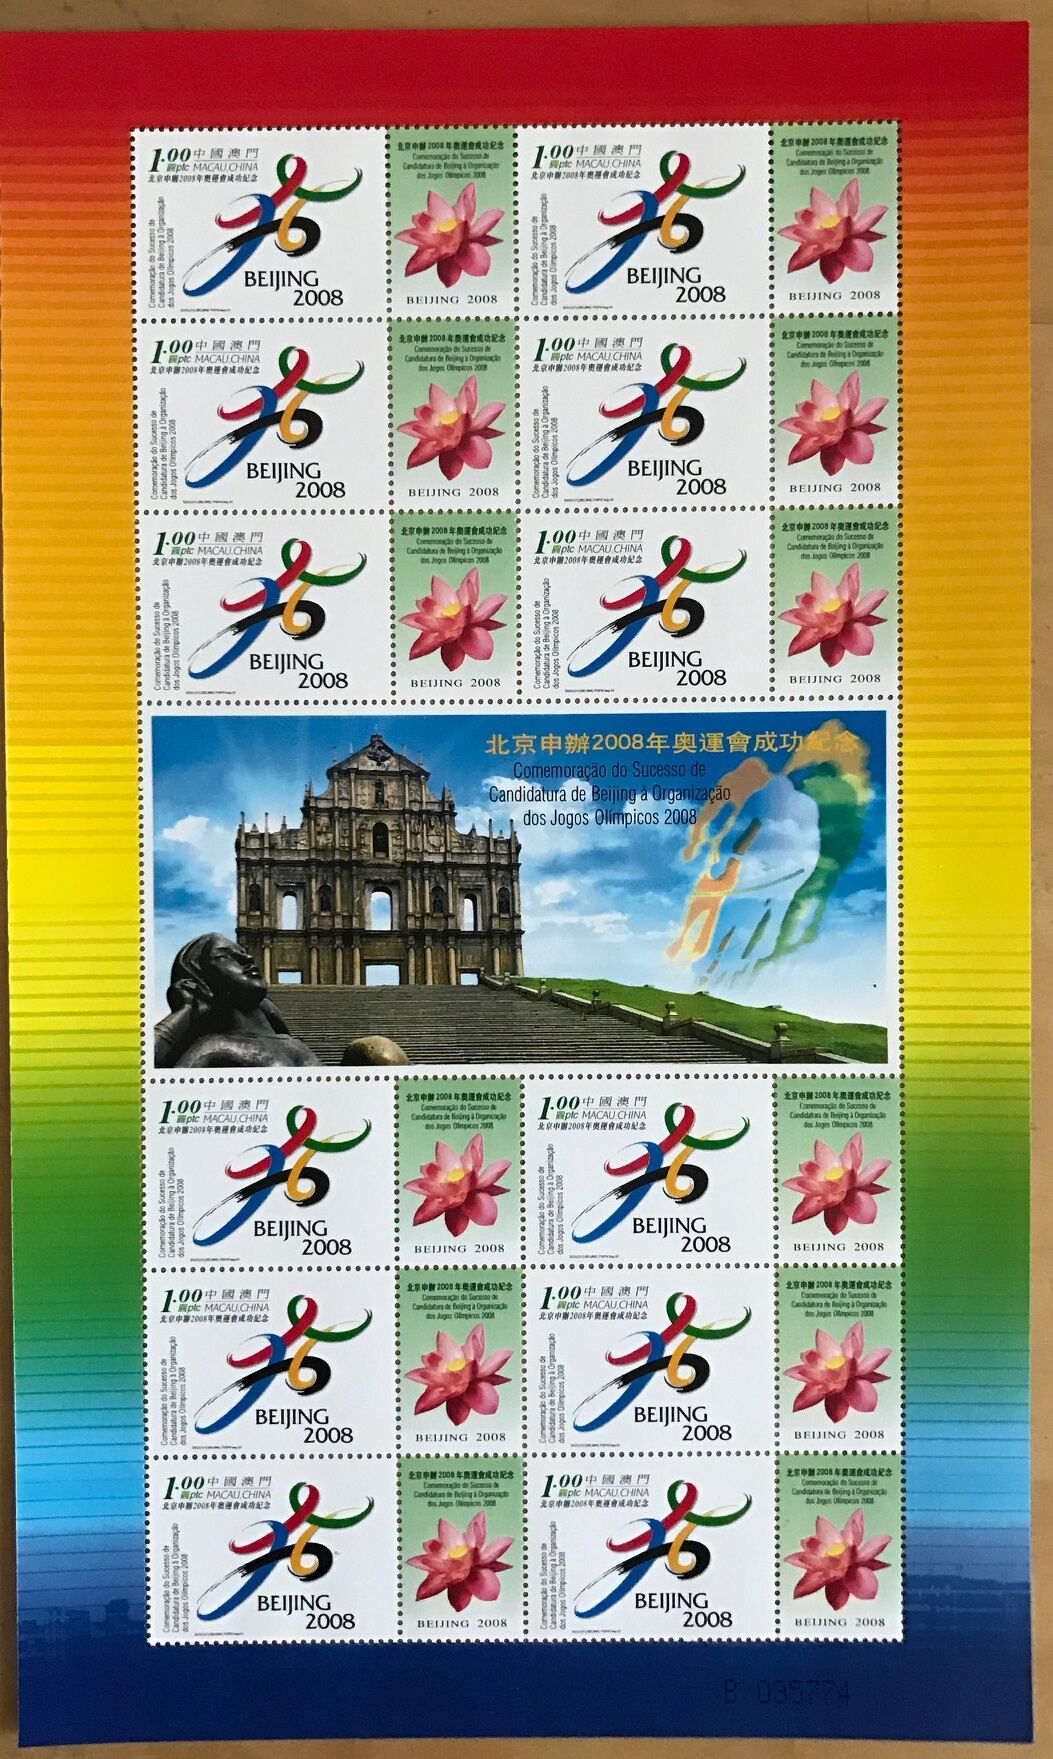 澳门2001年 北京 申奥 成功 邮票 小版(大图展示)